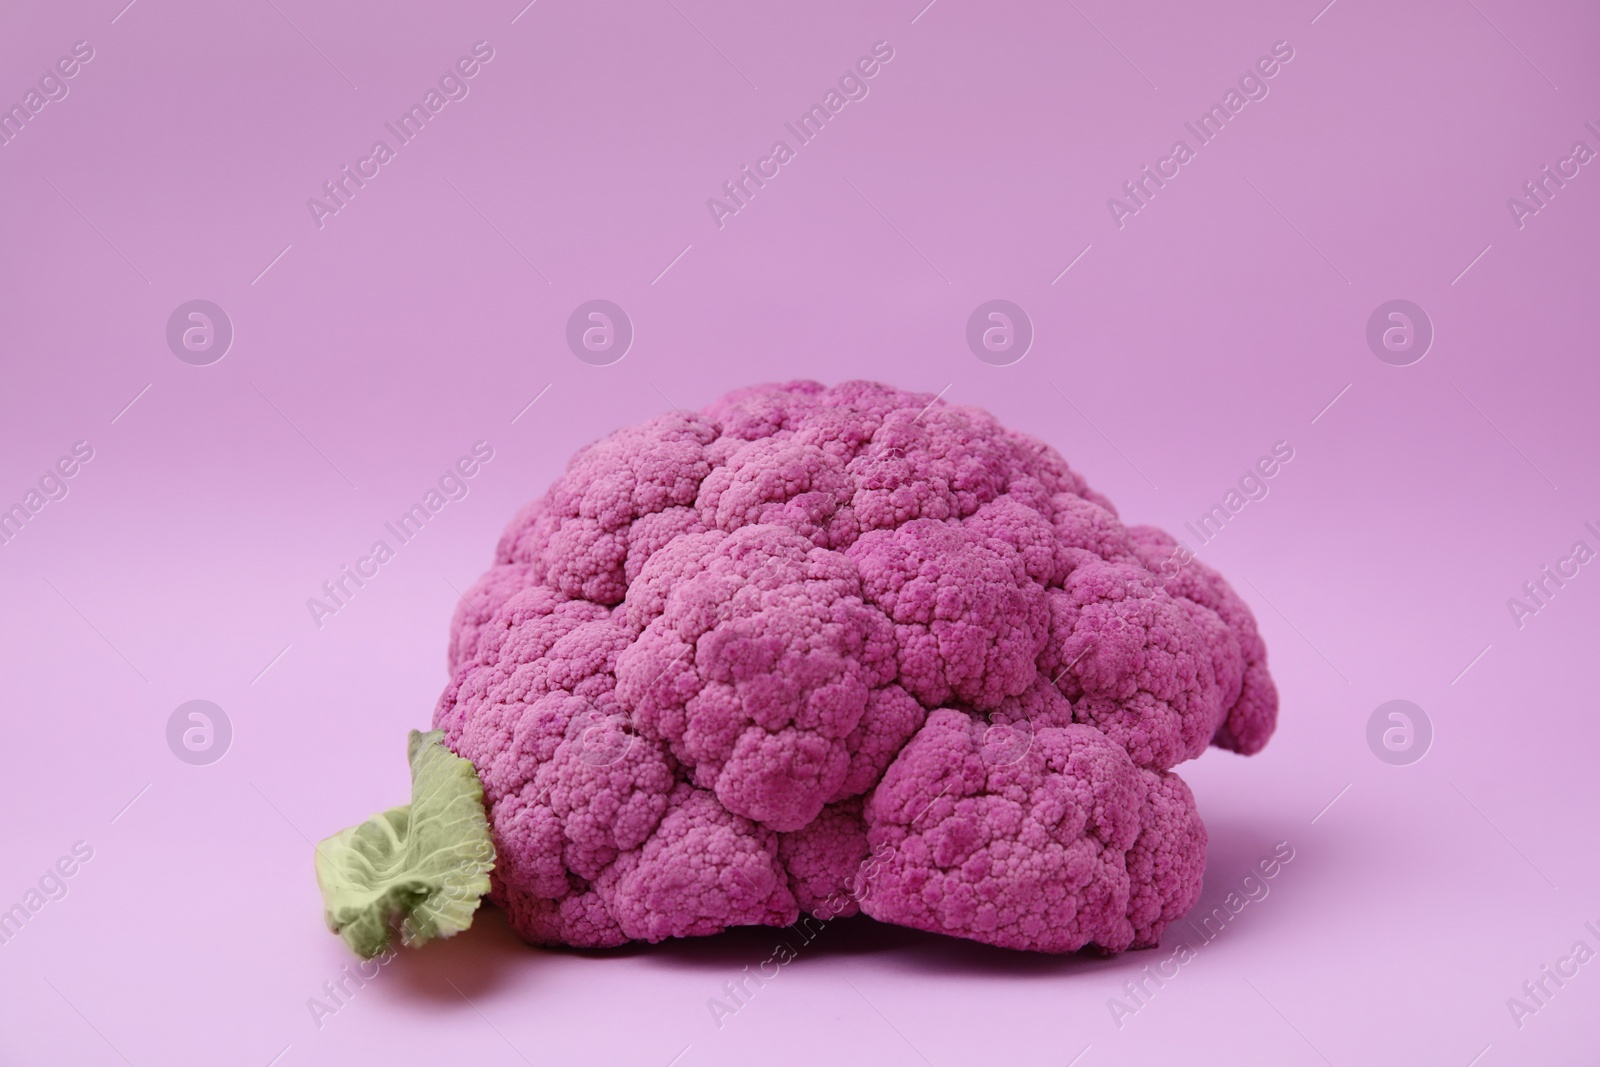 Photo of Whole fresh purple cauliflower on violet background